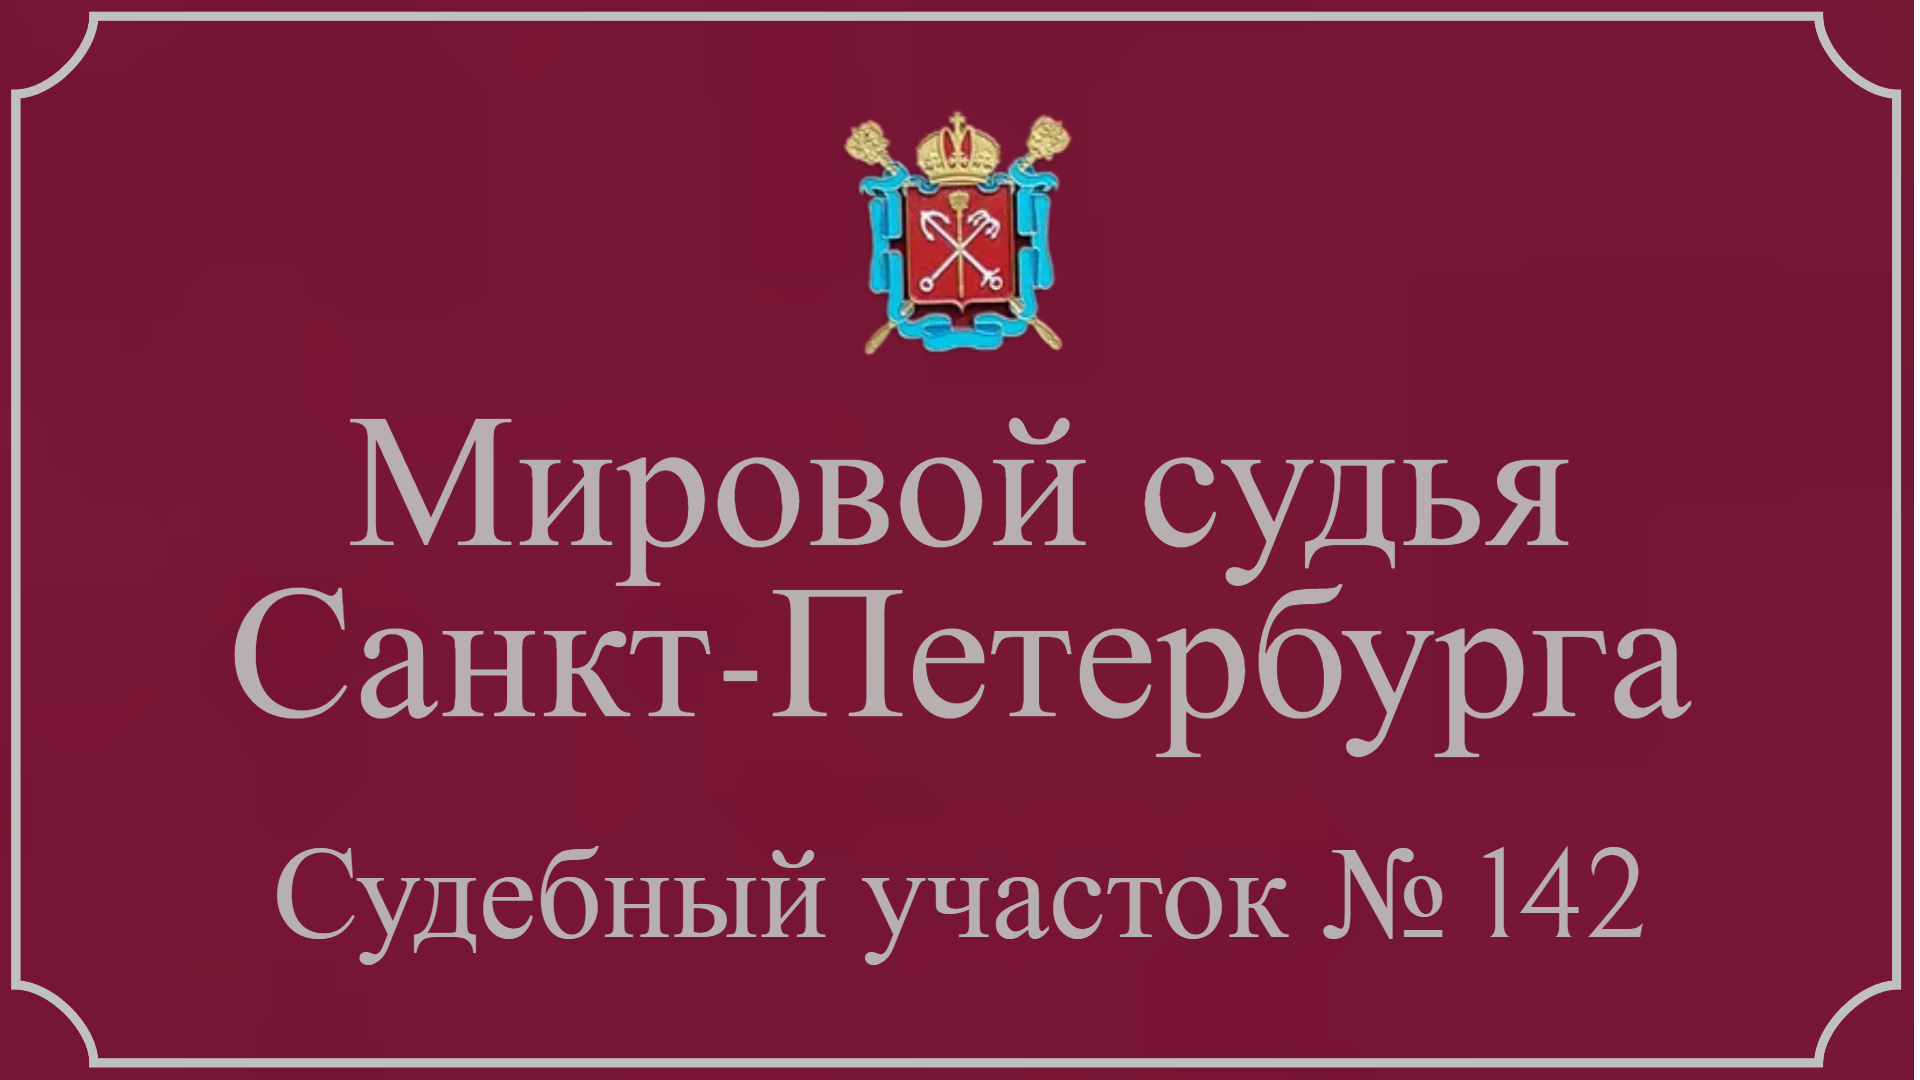 Информация по 142 судебному участку в Санкт-Петербурге.